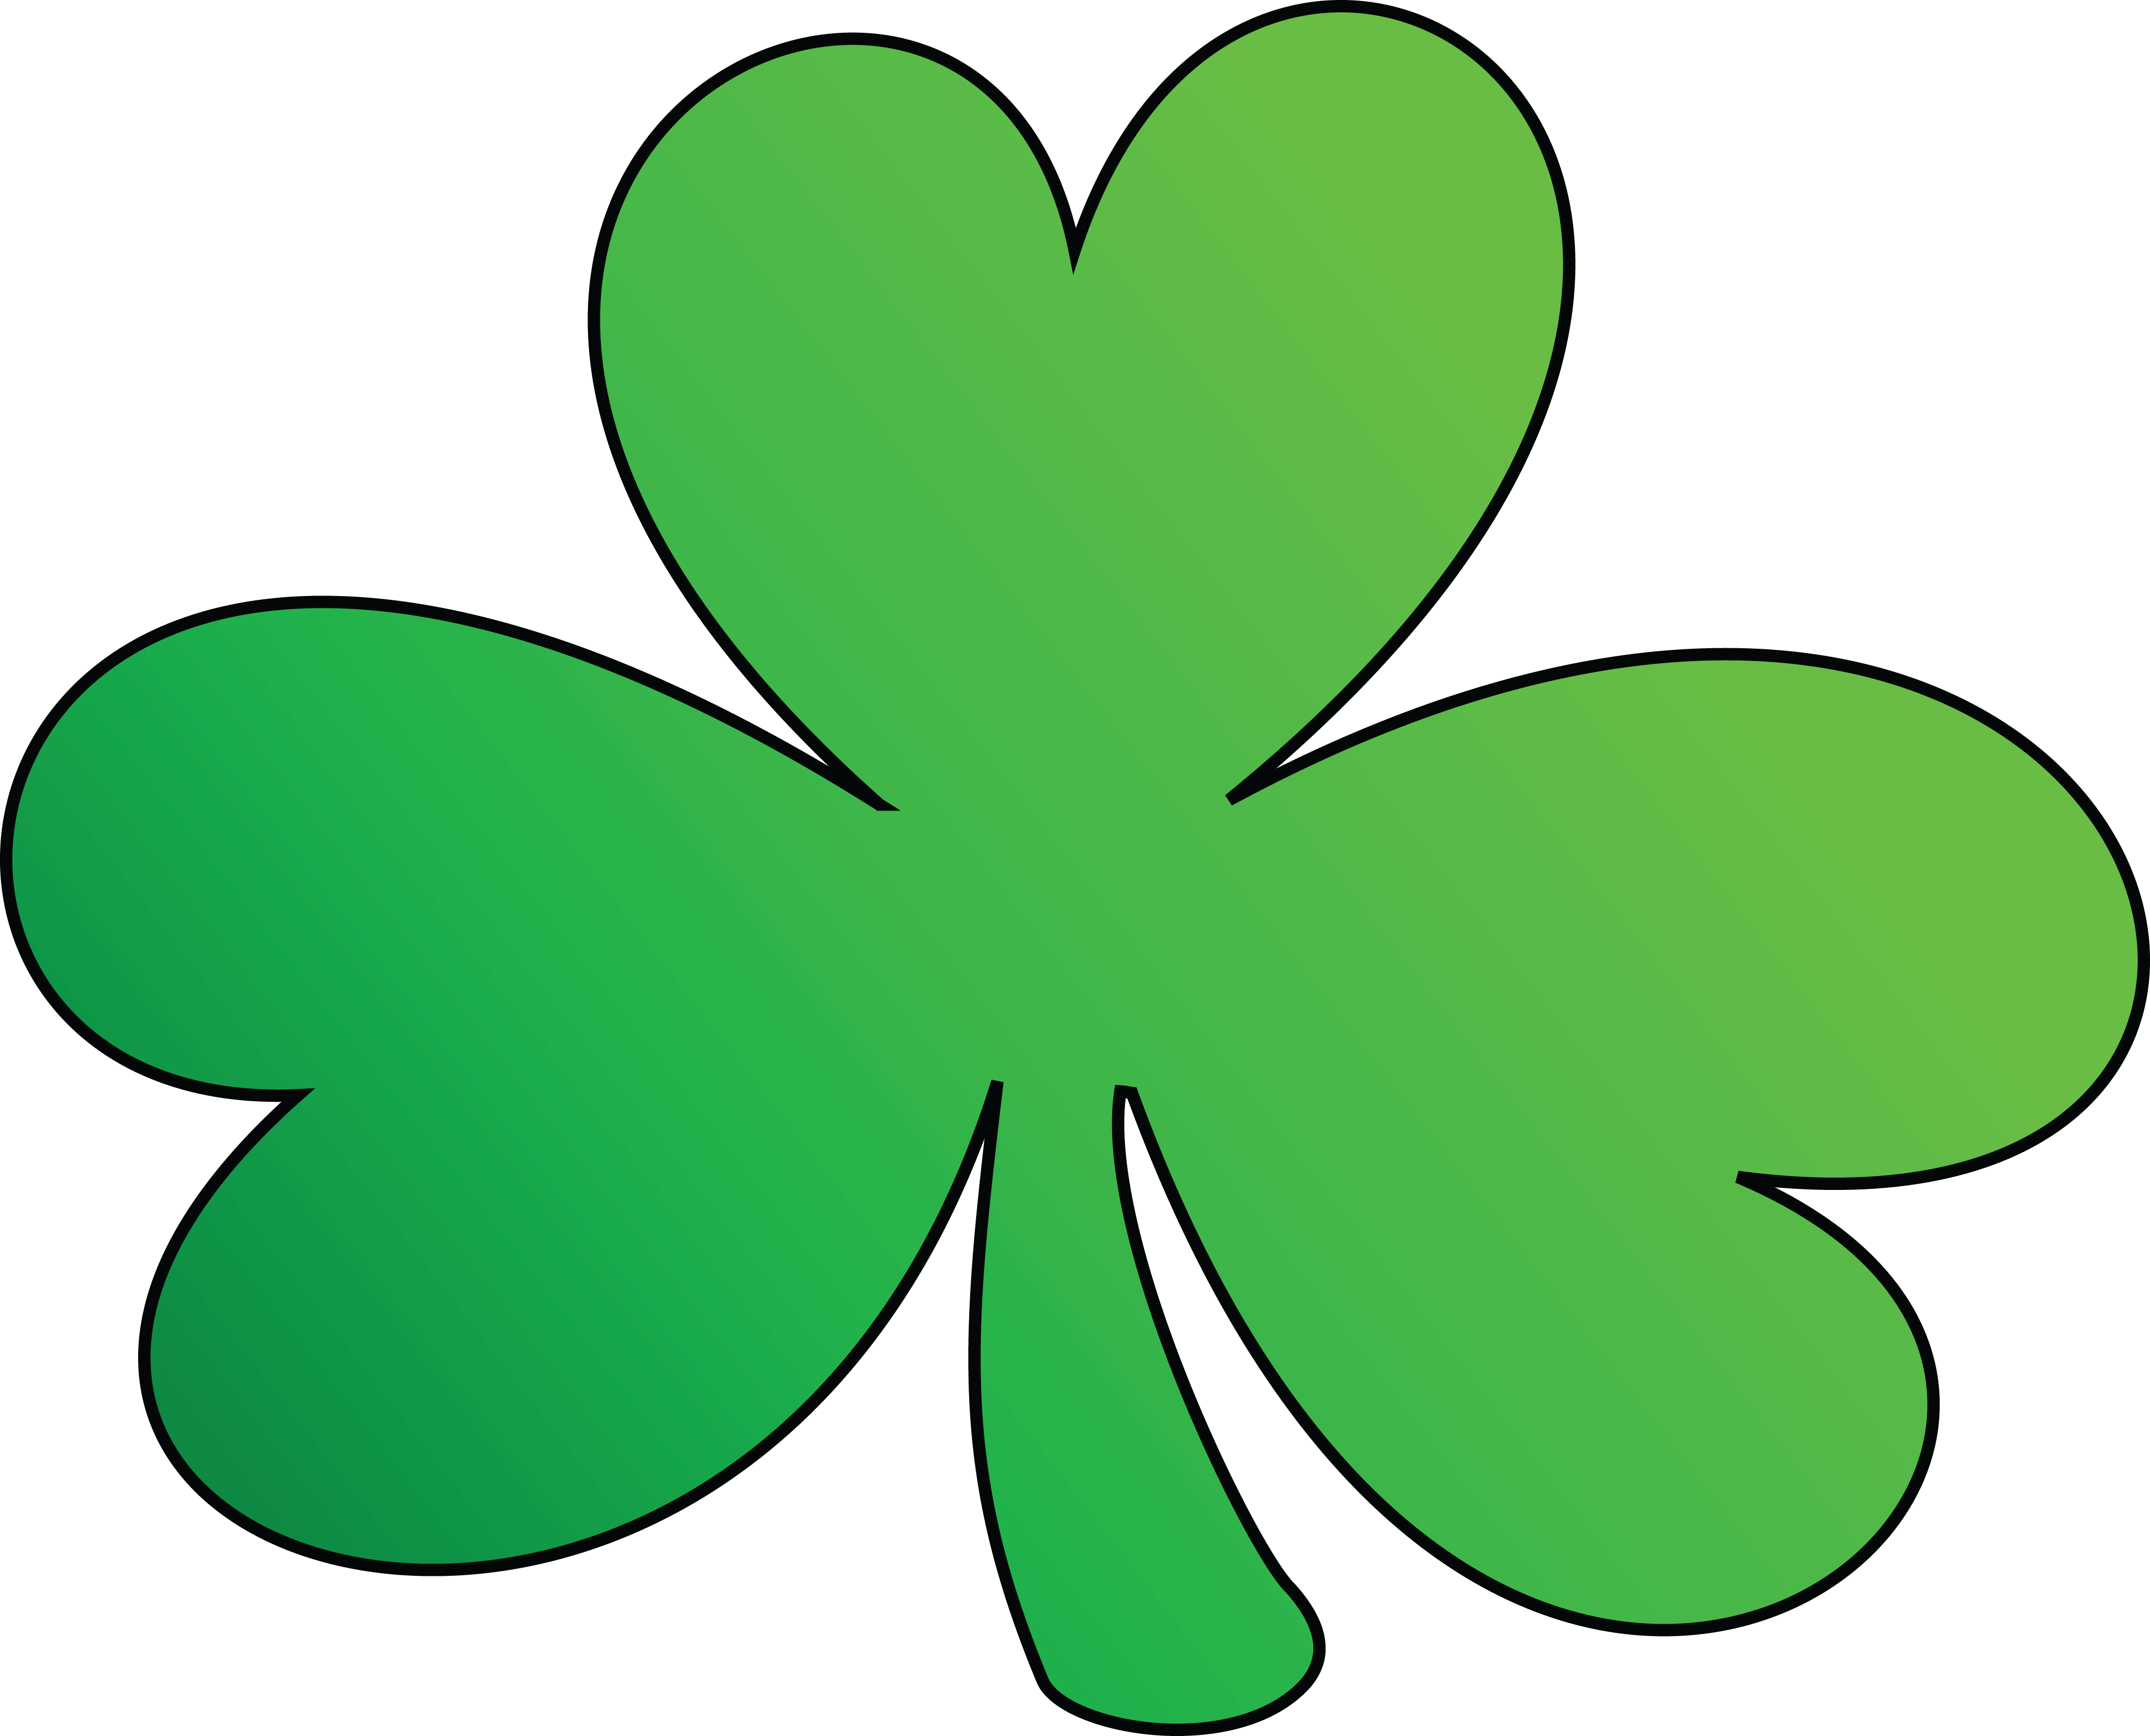 Clever irish. Ирландия Клевер четырехлистный. Святой Патрик Клевер трилистник. Четырёхлистный Клевер символ Ирландии. Клевер трилистник Ирландия.